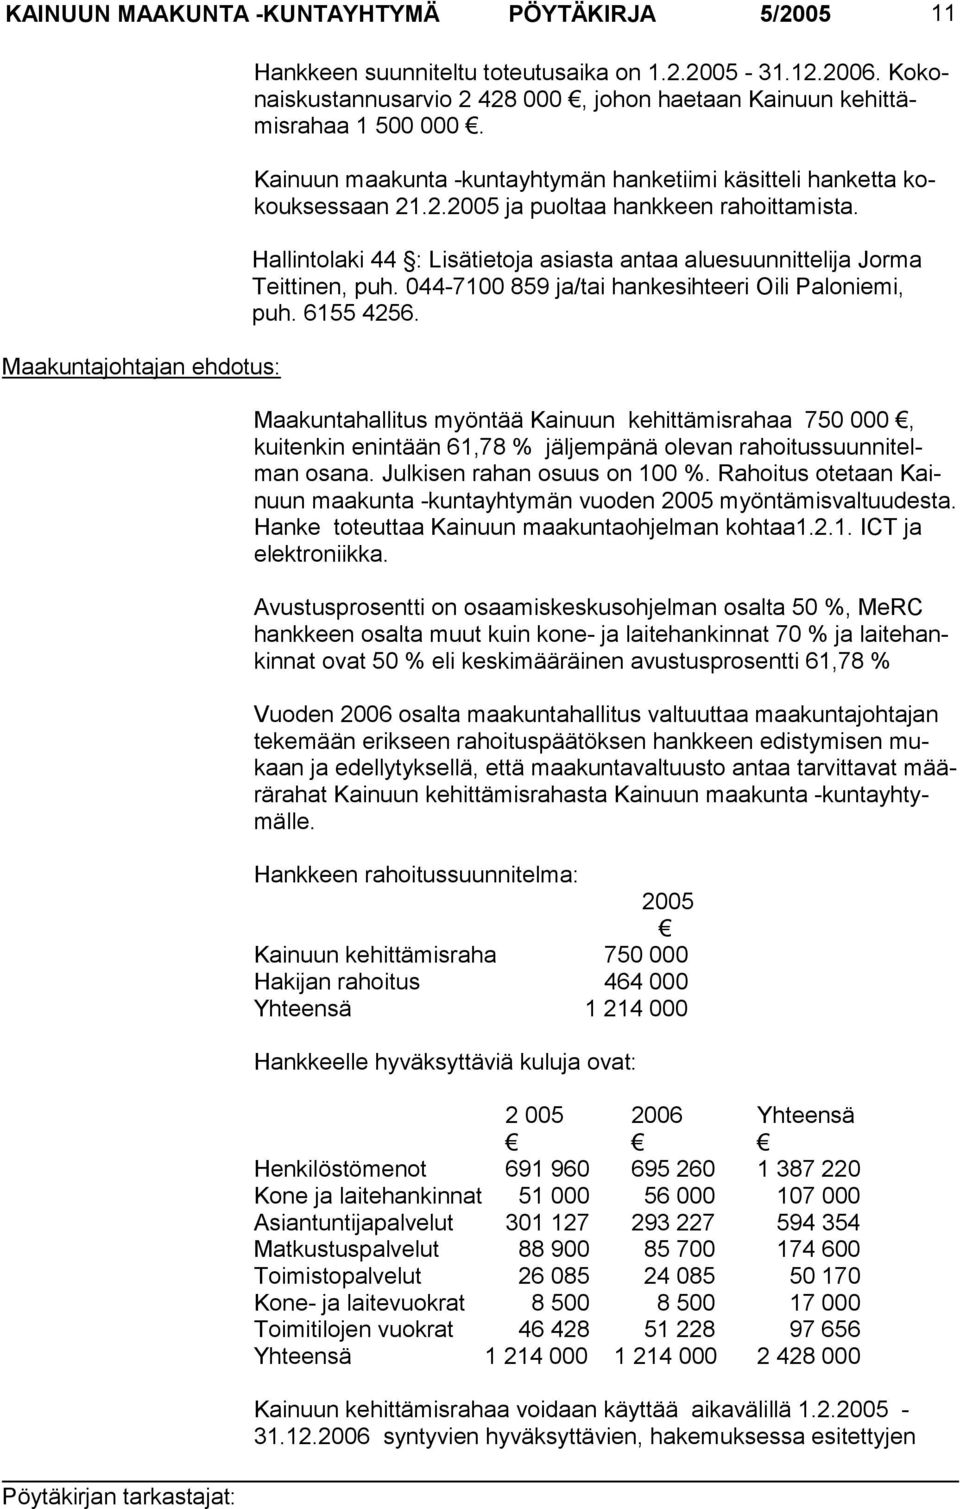 Hallintolaki 44 : Lisätietoja asiasta antaa aluesuunnittelija Jorma Teittinen, puh. 044-7100 859 ja/tai hankesihteeri Oili Paloniemi, puh. 6155 4256.